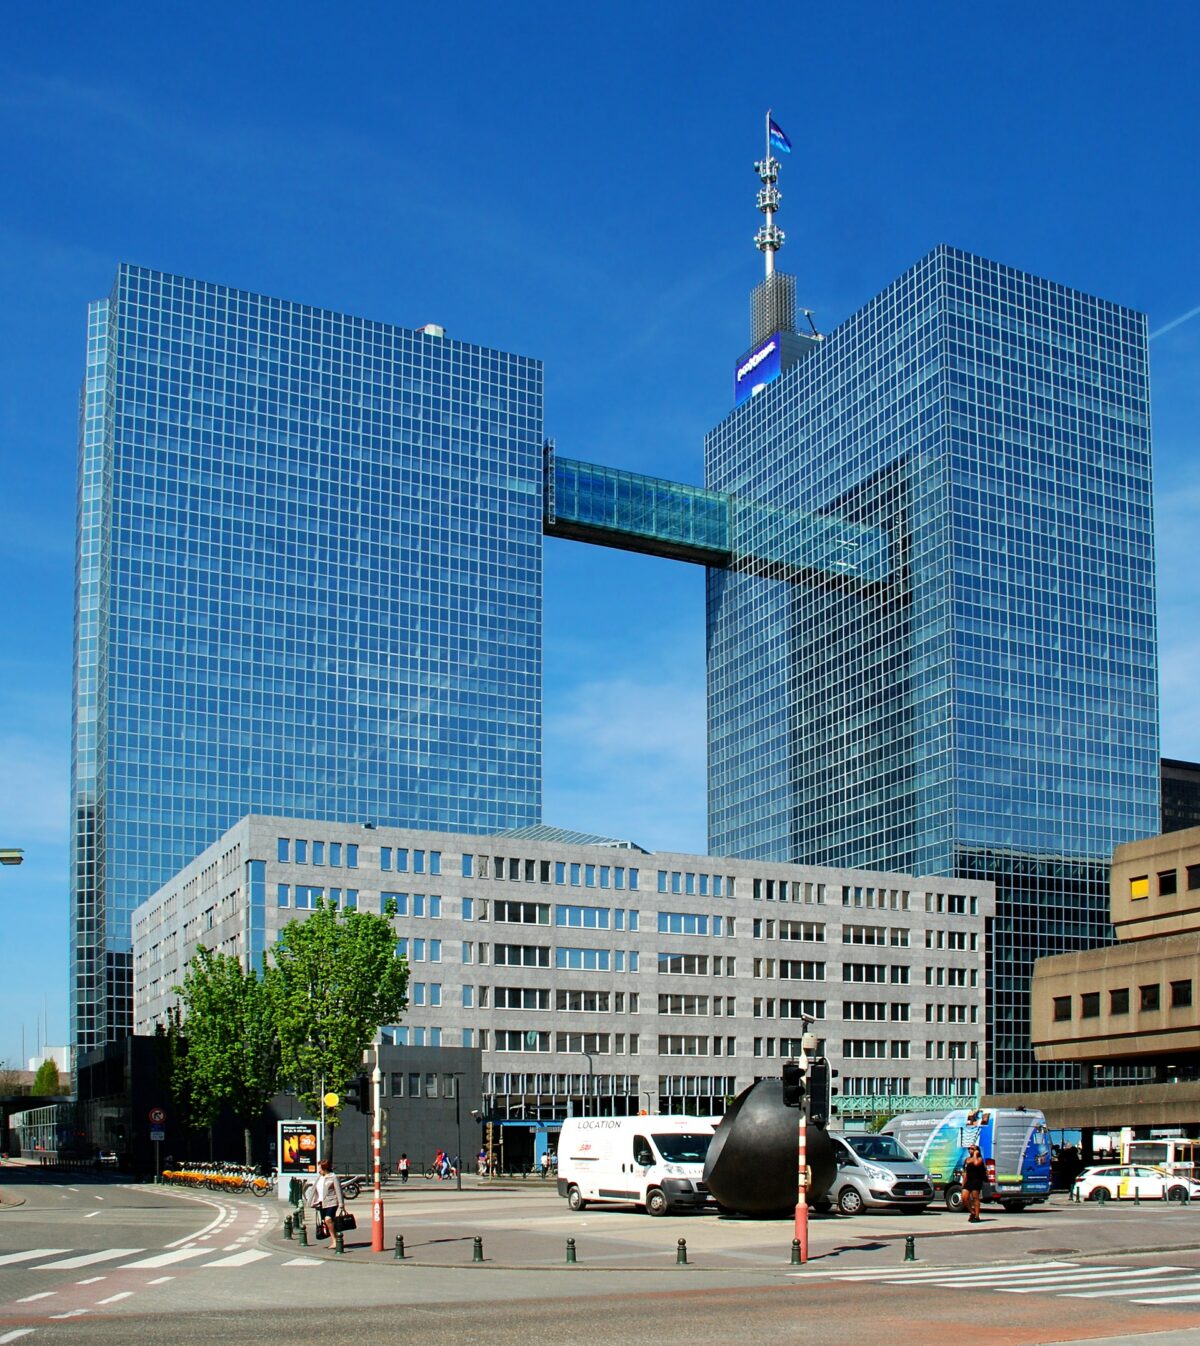 Proximus Towers in Brussels, Belgium